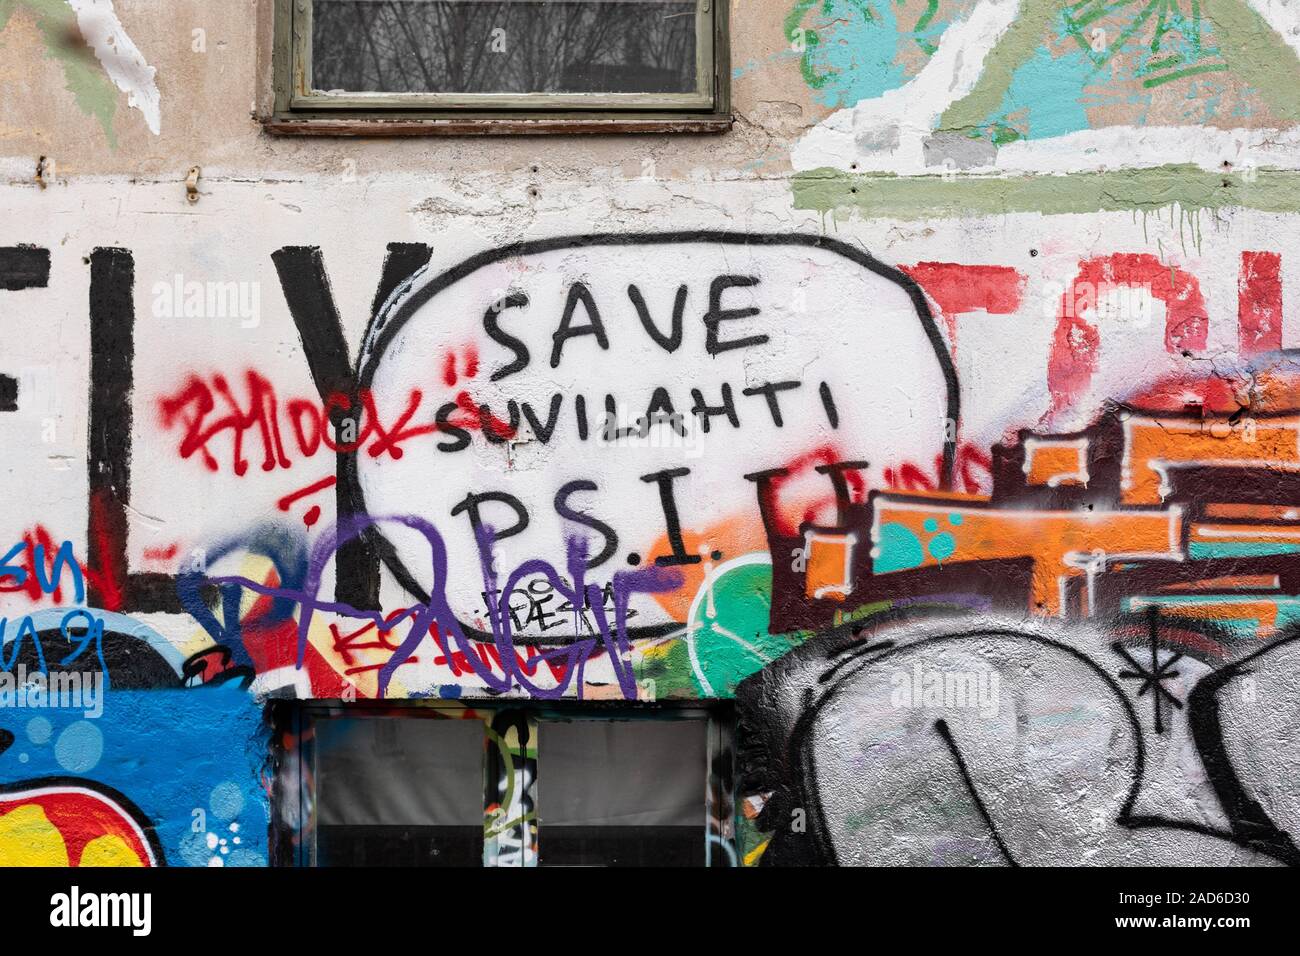 Speichern Suvilahti - Schreiben auf ein Graffiti bedeckt Gebäude in der Rückseite des Helsinki, Finnland Stockfoto